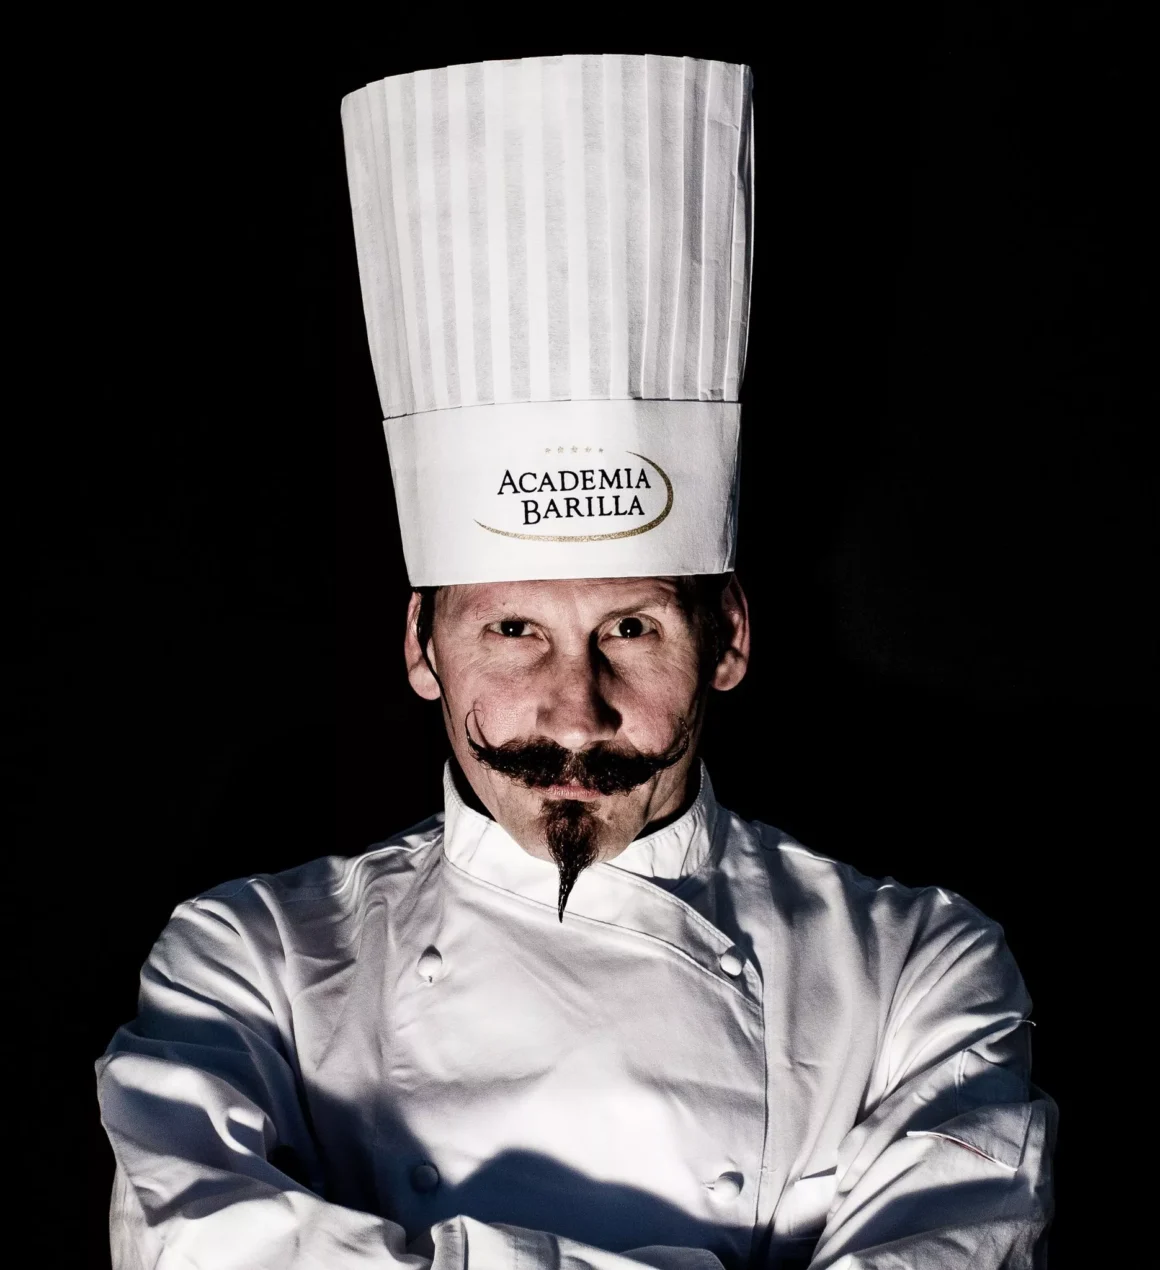 Il ritratto di Armando Capochiani, eclettico chef e fotografo “ArchiChef”: di “Alba Simigliani”